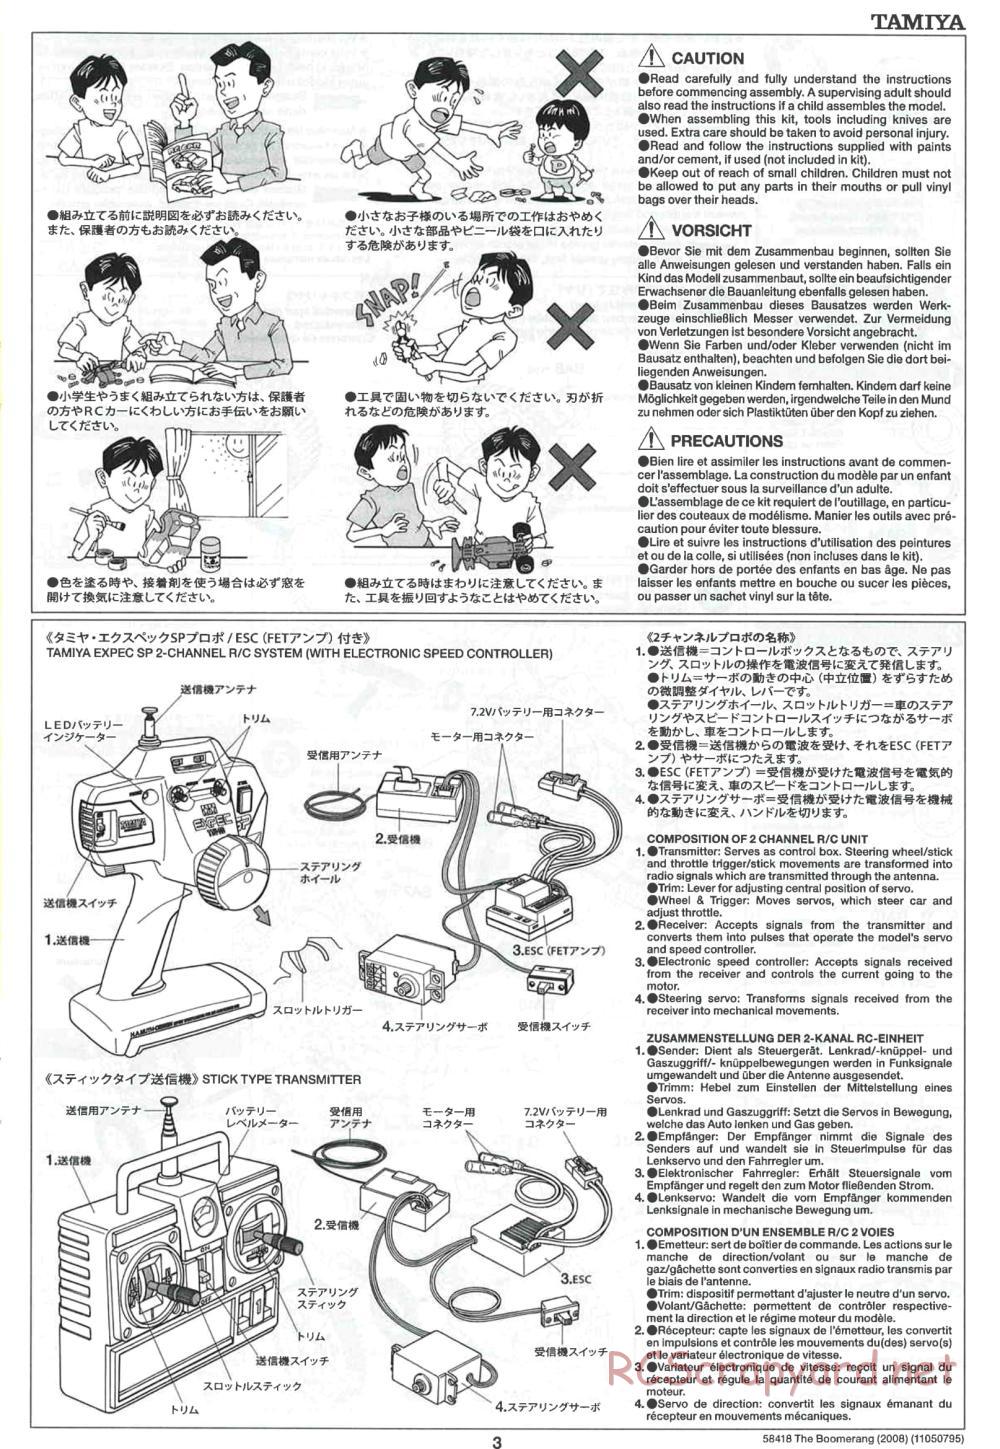 Tamiya - The Boomerang 2008 Chassis - Manual - Page 3